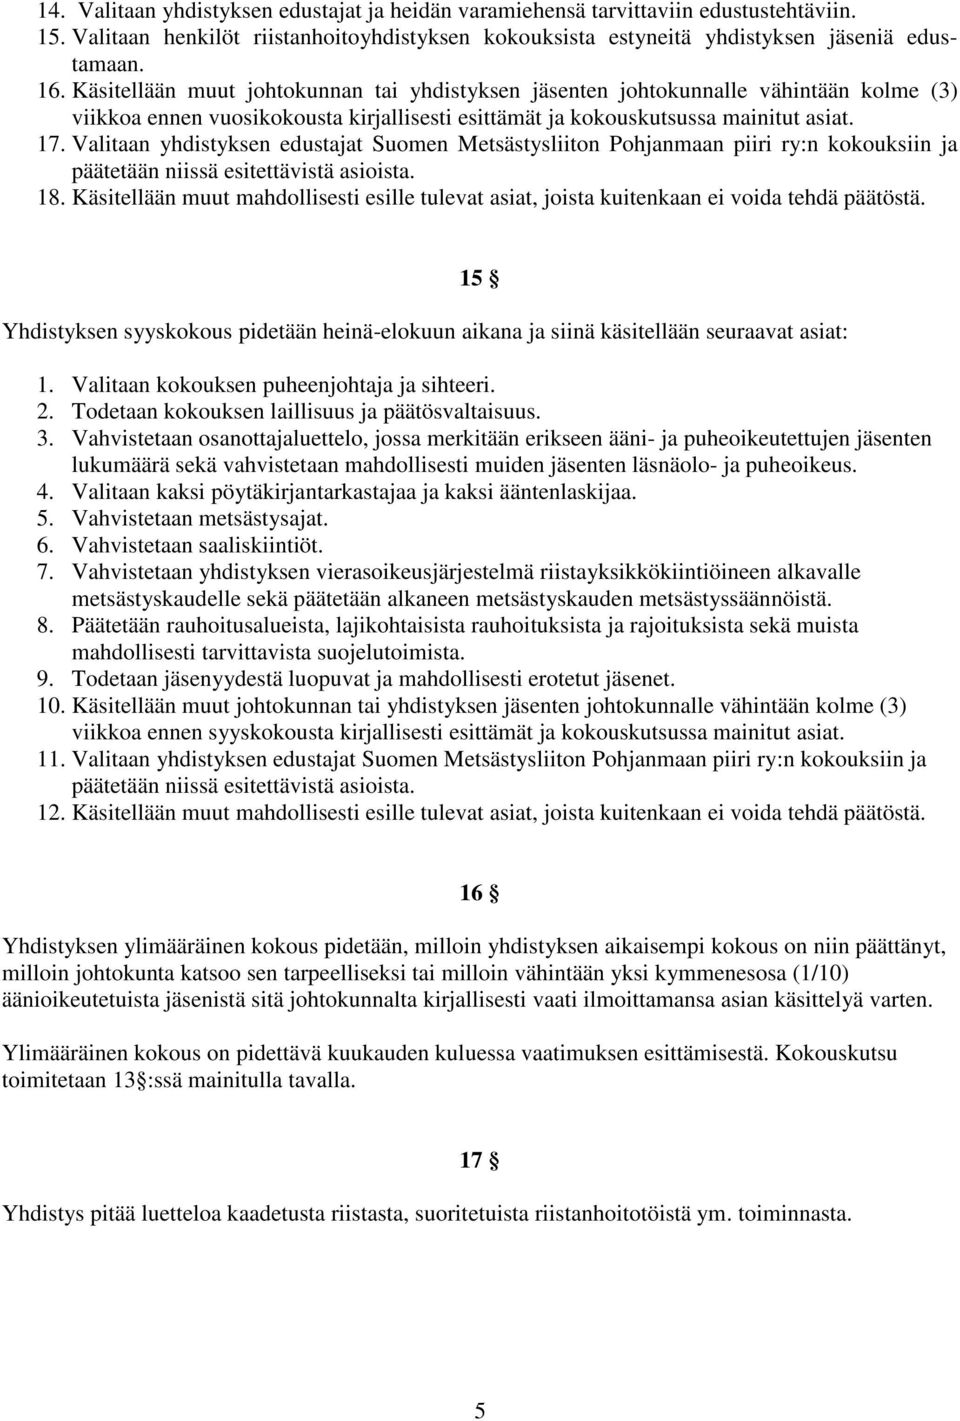 Valitaan yhdistyksen edustajat Suomen Metsästysliiton Pohjanmaan piiri ry:n kokouksiin ja päätetään niissä esitettävistä asioista. 18.